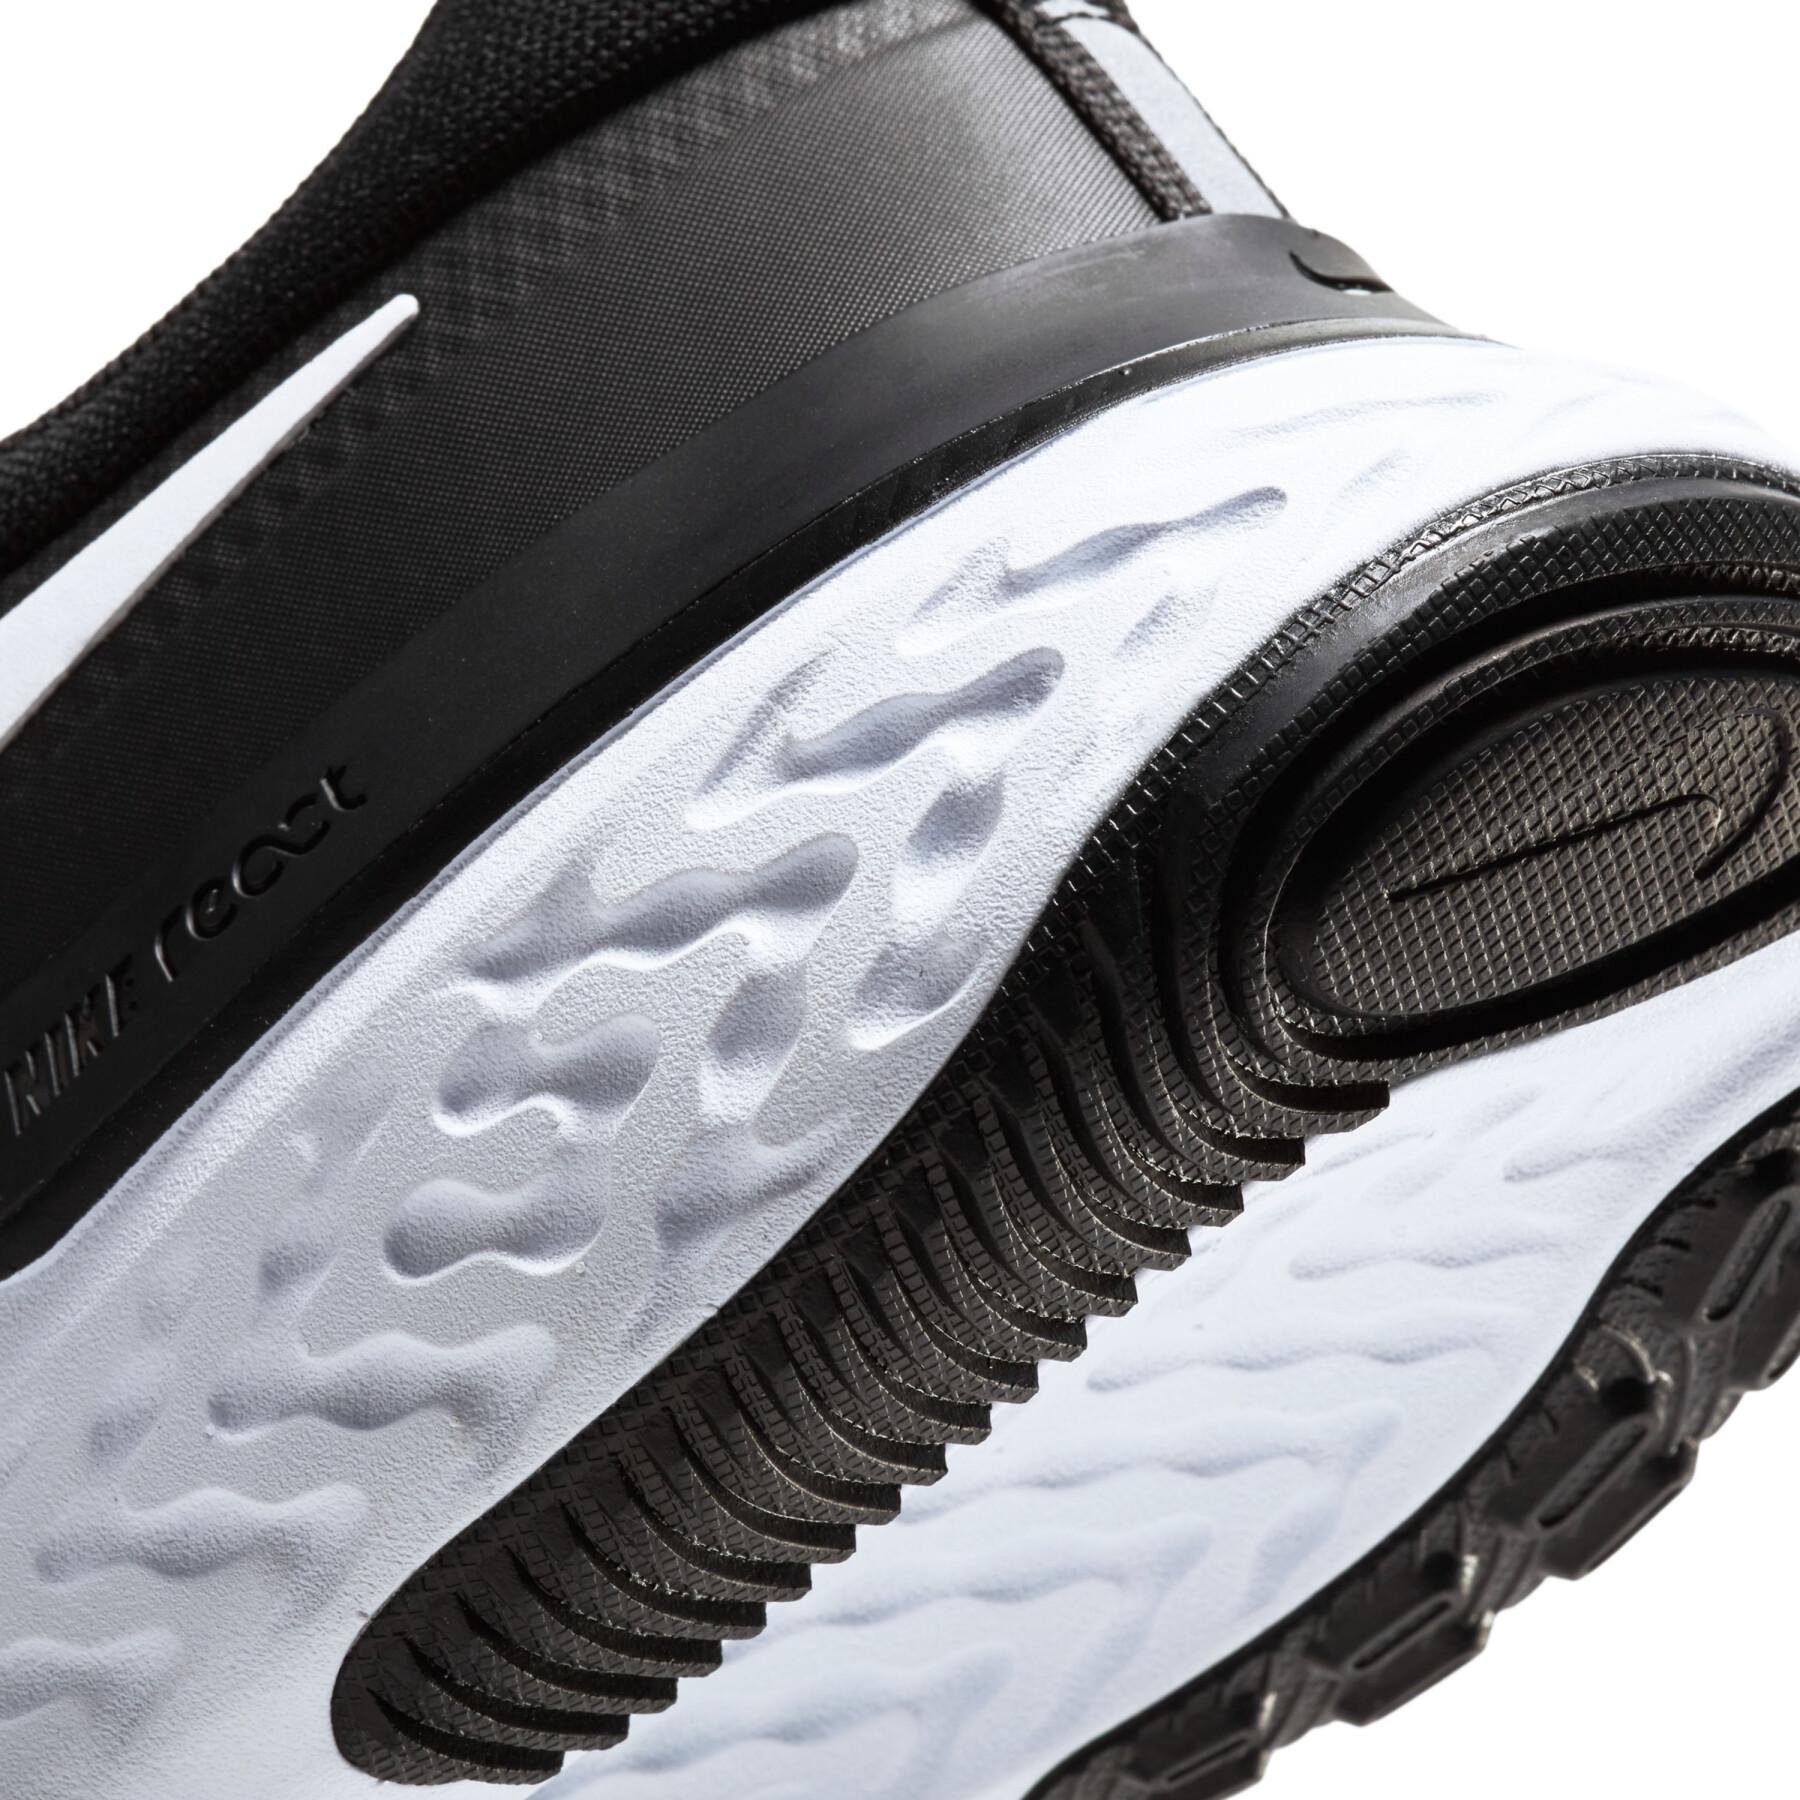 Zapatillas de running Nike React Miler